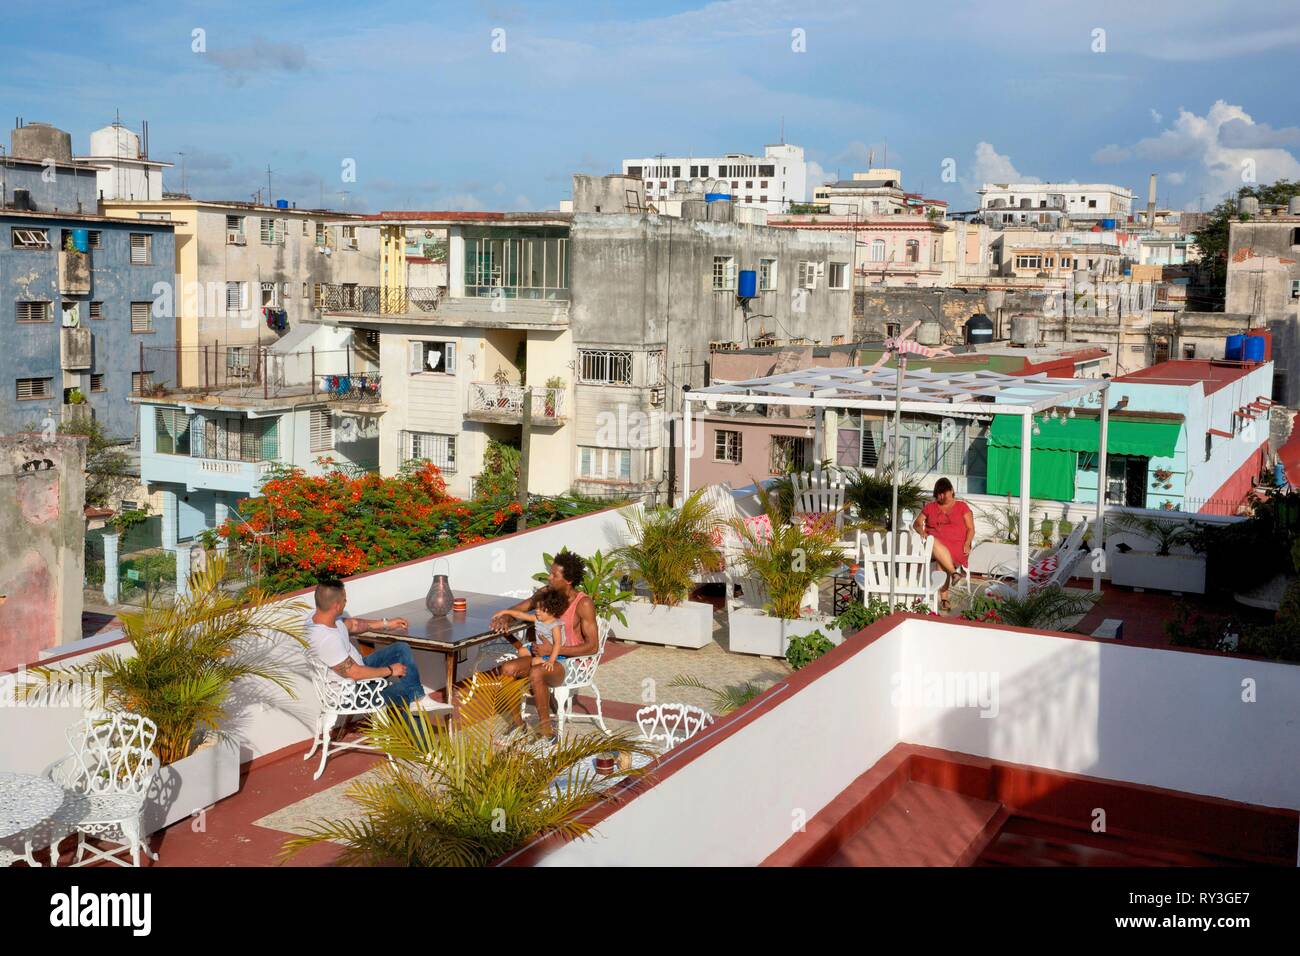 Cuba, La Havane, Vedado, les hommes sur la terrasse de la guesthouse Casa  querida, ouvert sur les toits de la ville Photo Stock - Alamy